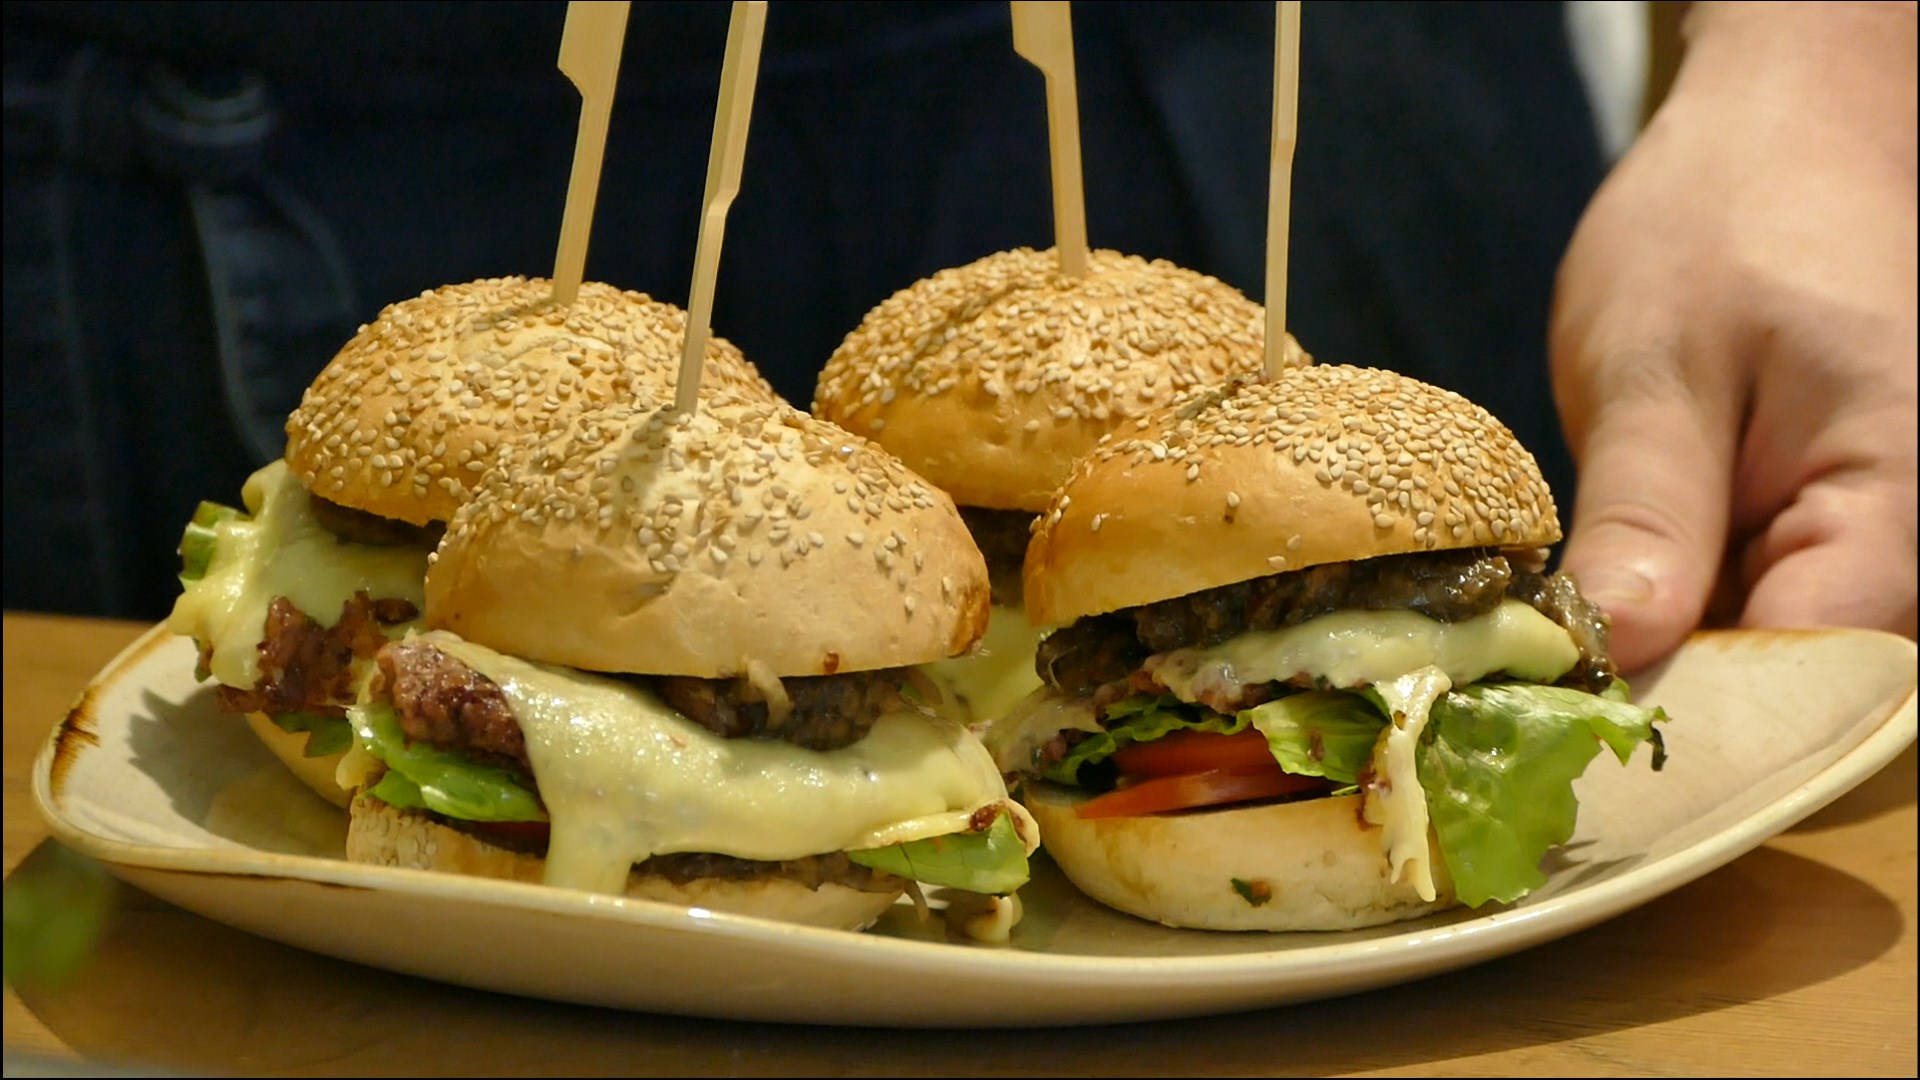 Vier kleine Burger, die mit einem Holzstab zusammengehalten werden, sind auf einem Teller angerichtet, der von einer Person auf einem Tisch abgestellt wird.